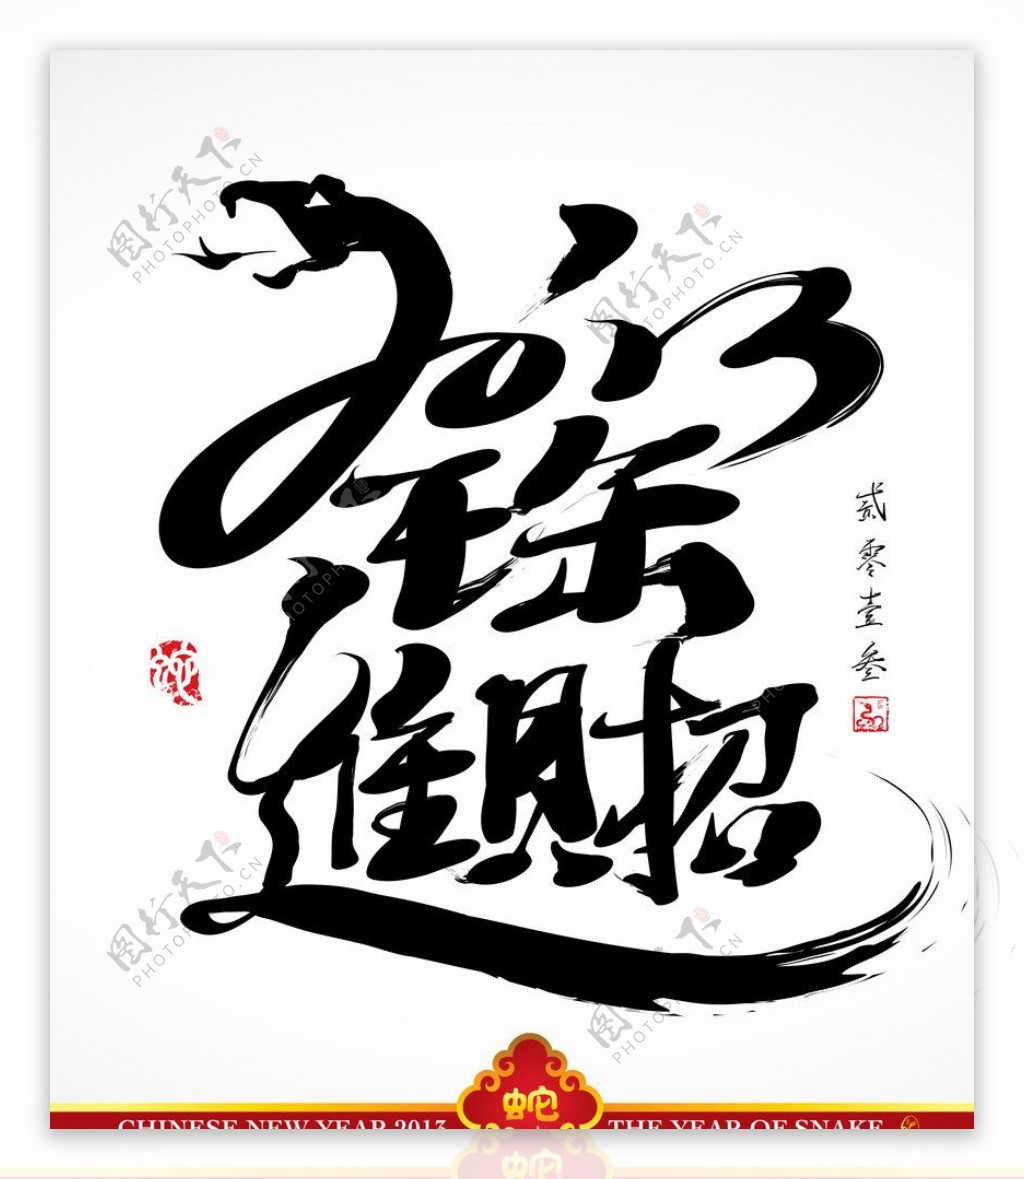 2013春节新年海报招财进宝图片